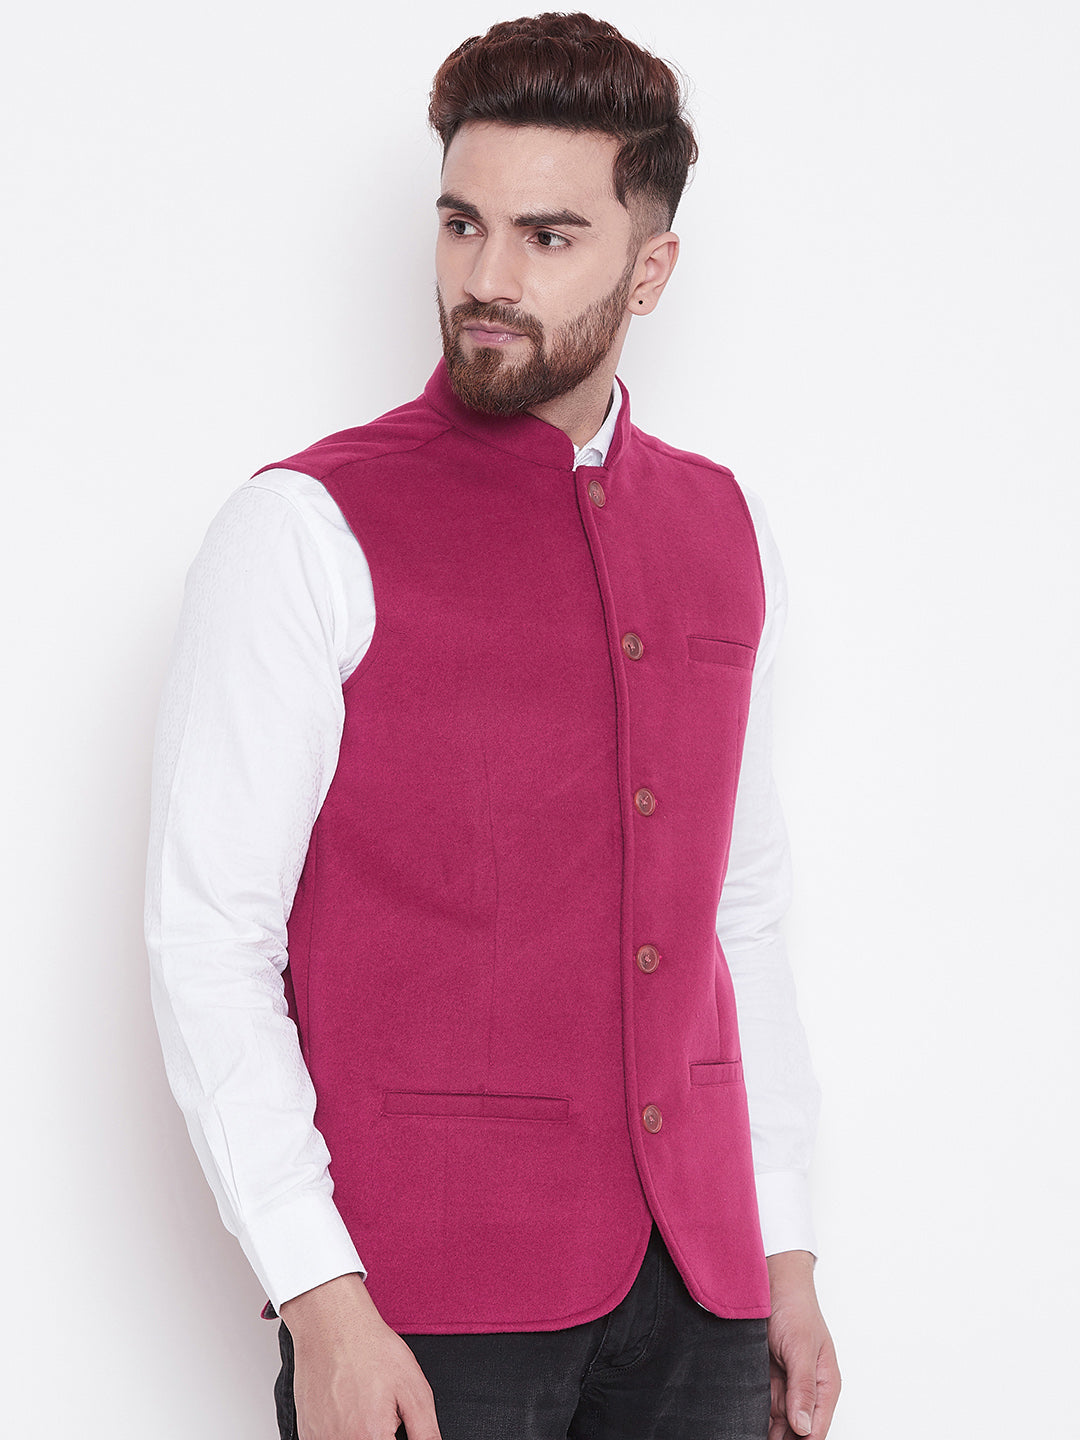 Men's Pink Blended Wool Nehru Jacket - Even Apparels